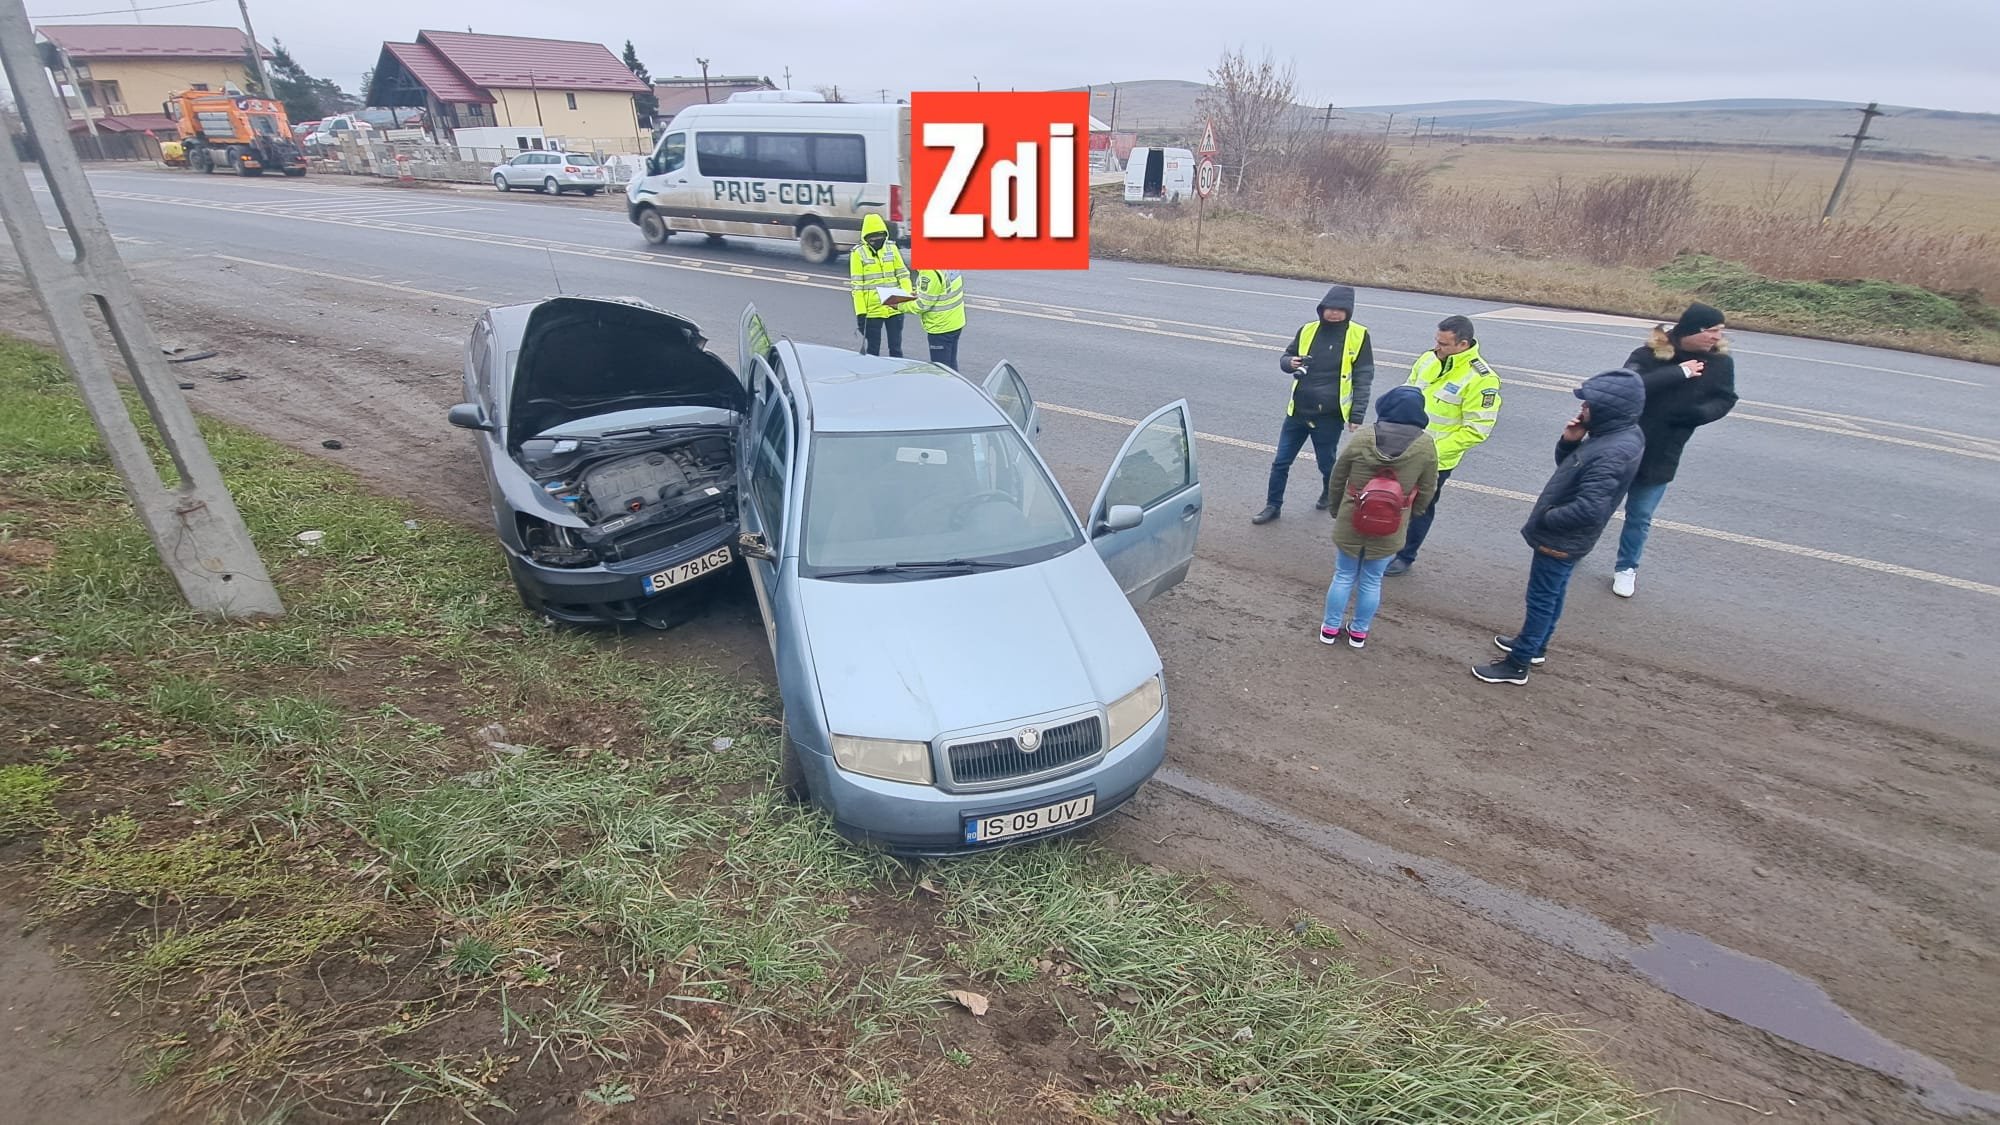  Impact violent pe şoseaua morţii, la Leţcani: două persoane au fost rănite (FOTO-VIDEO)